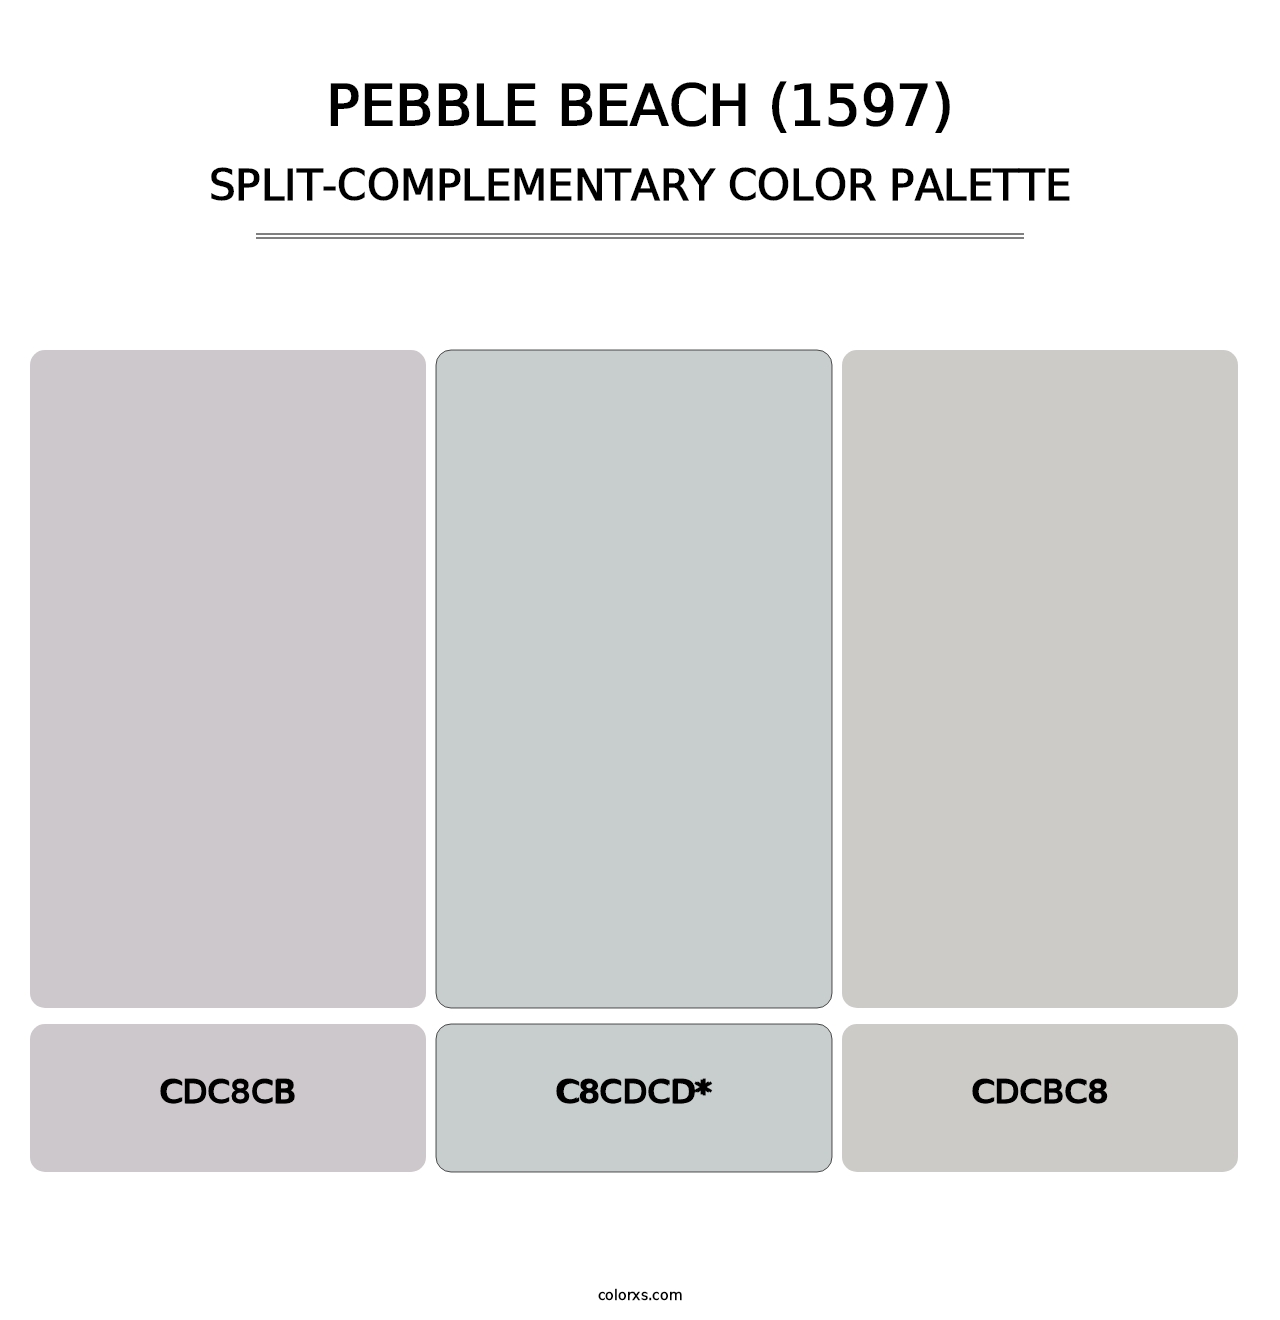 Pebble Beach (1597) - Split-Complementary Color Palette